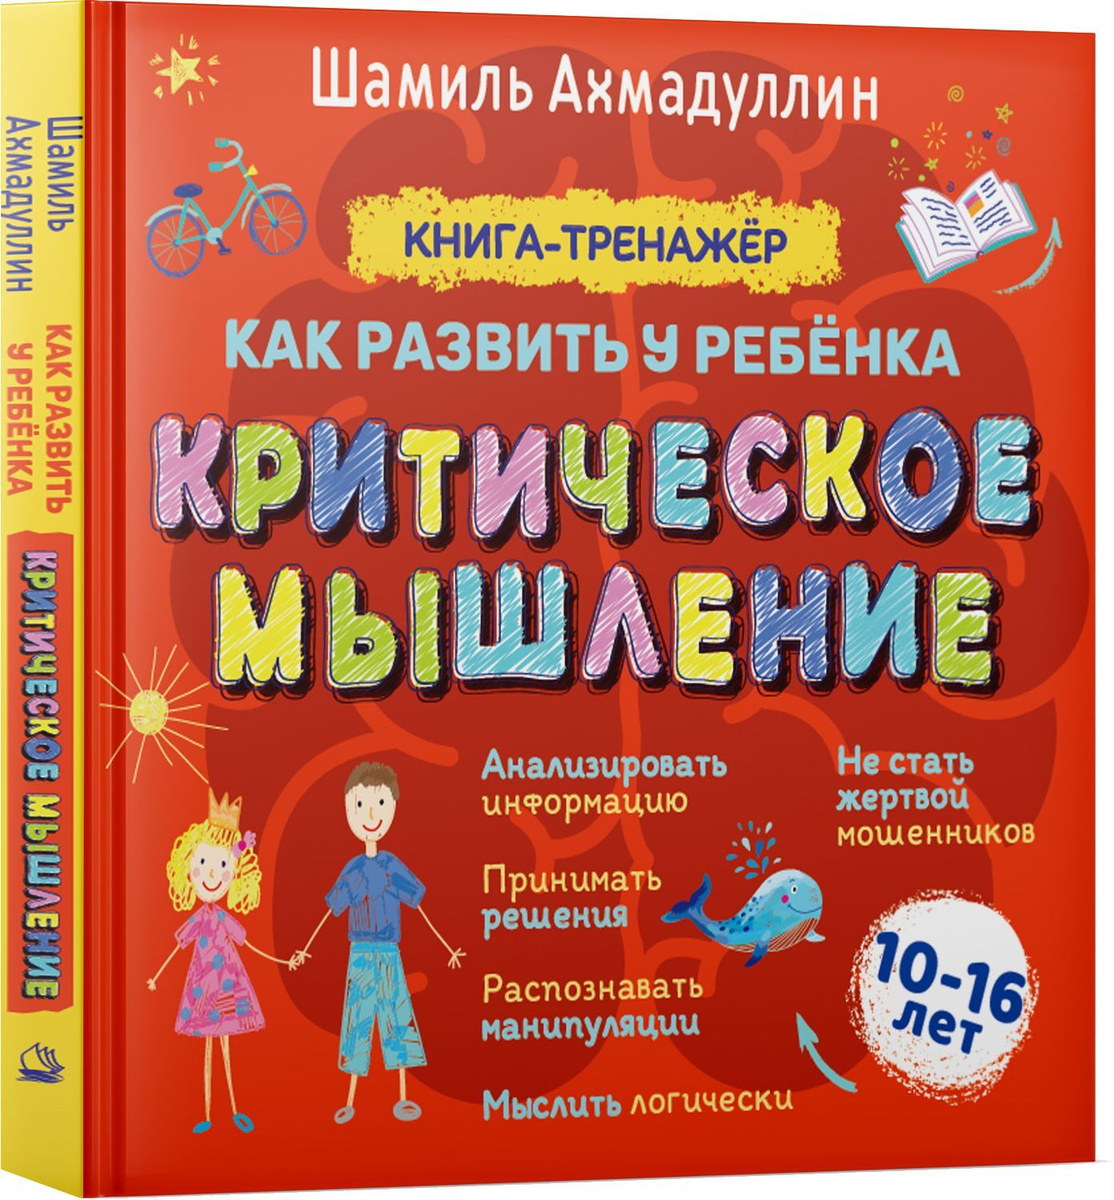 Критическое мышление. Книга-тренинг для подростков 10-16 лет | Ахмадуллин Шамиль Тагирович  #1